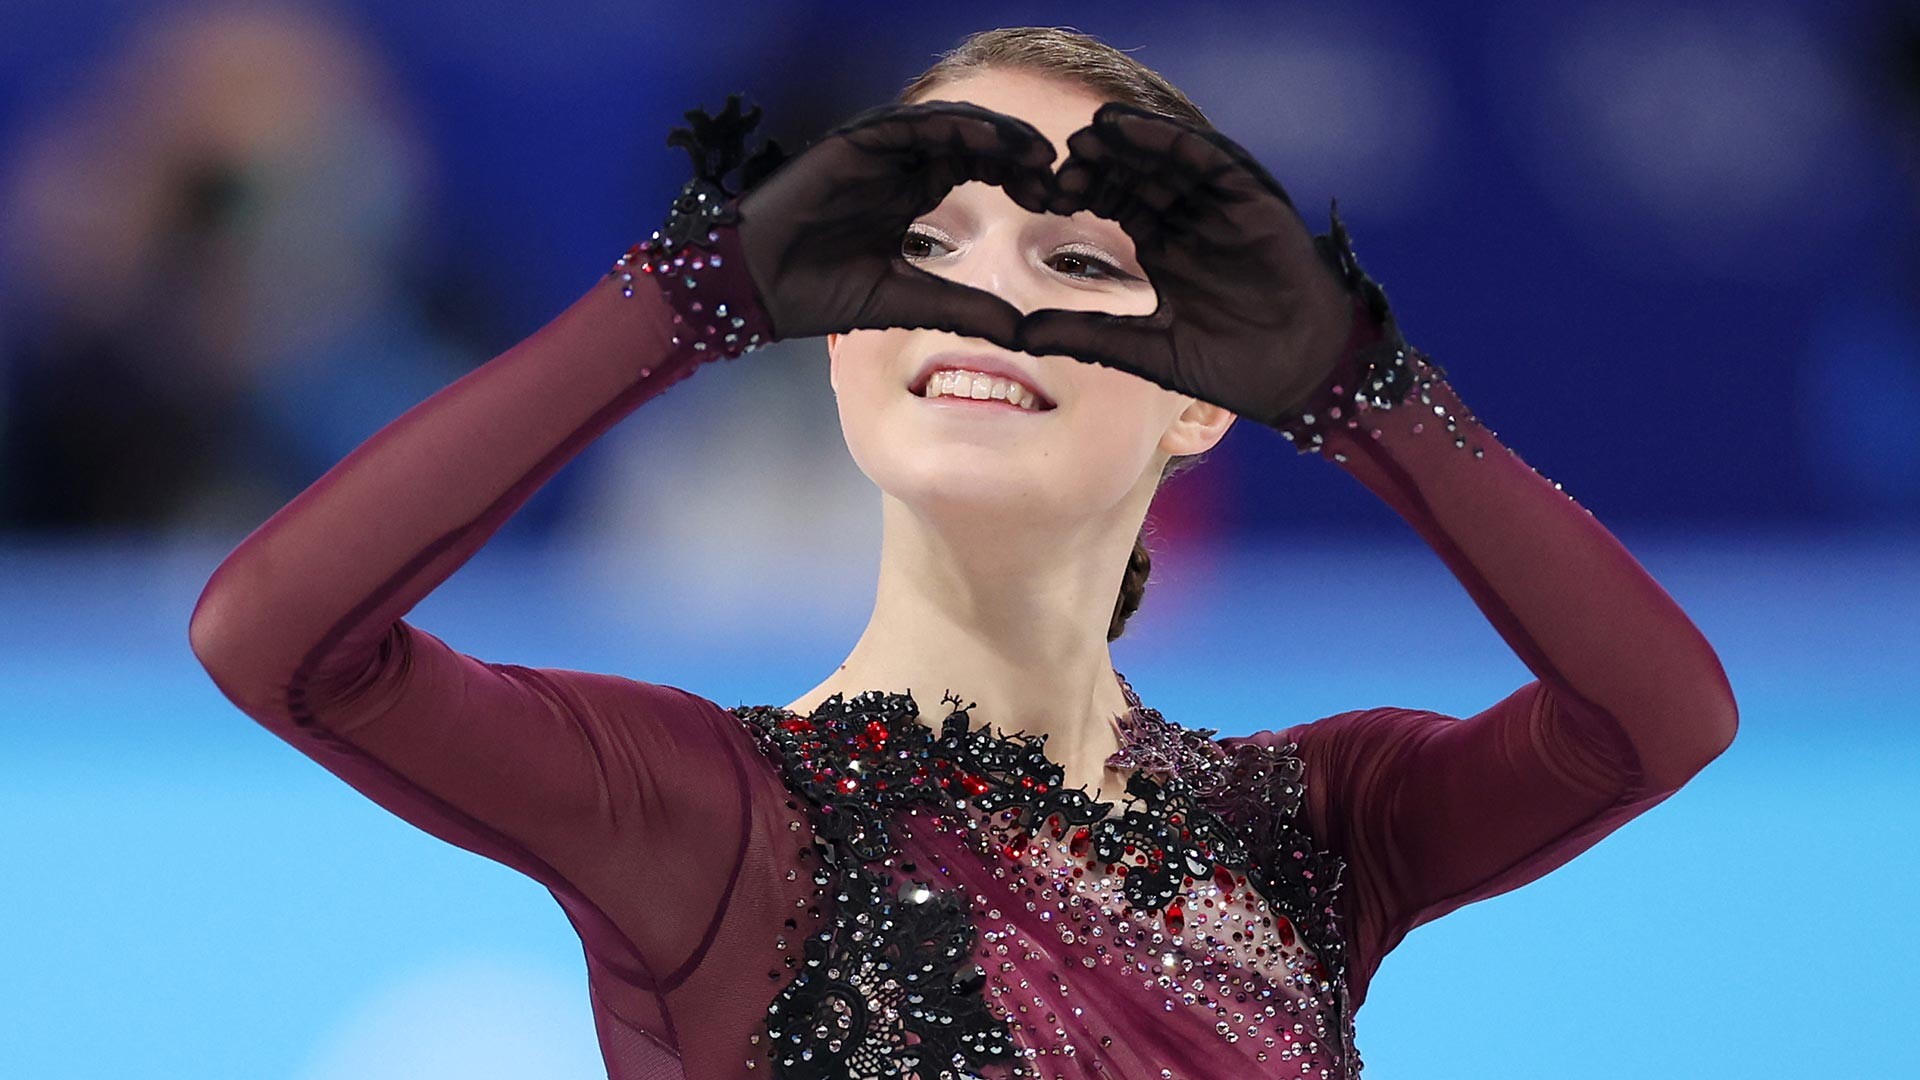 The 2022 Olympic champion Anna Shcherbakova